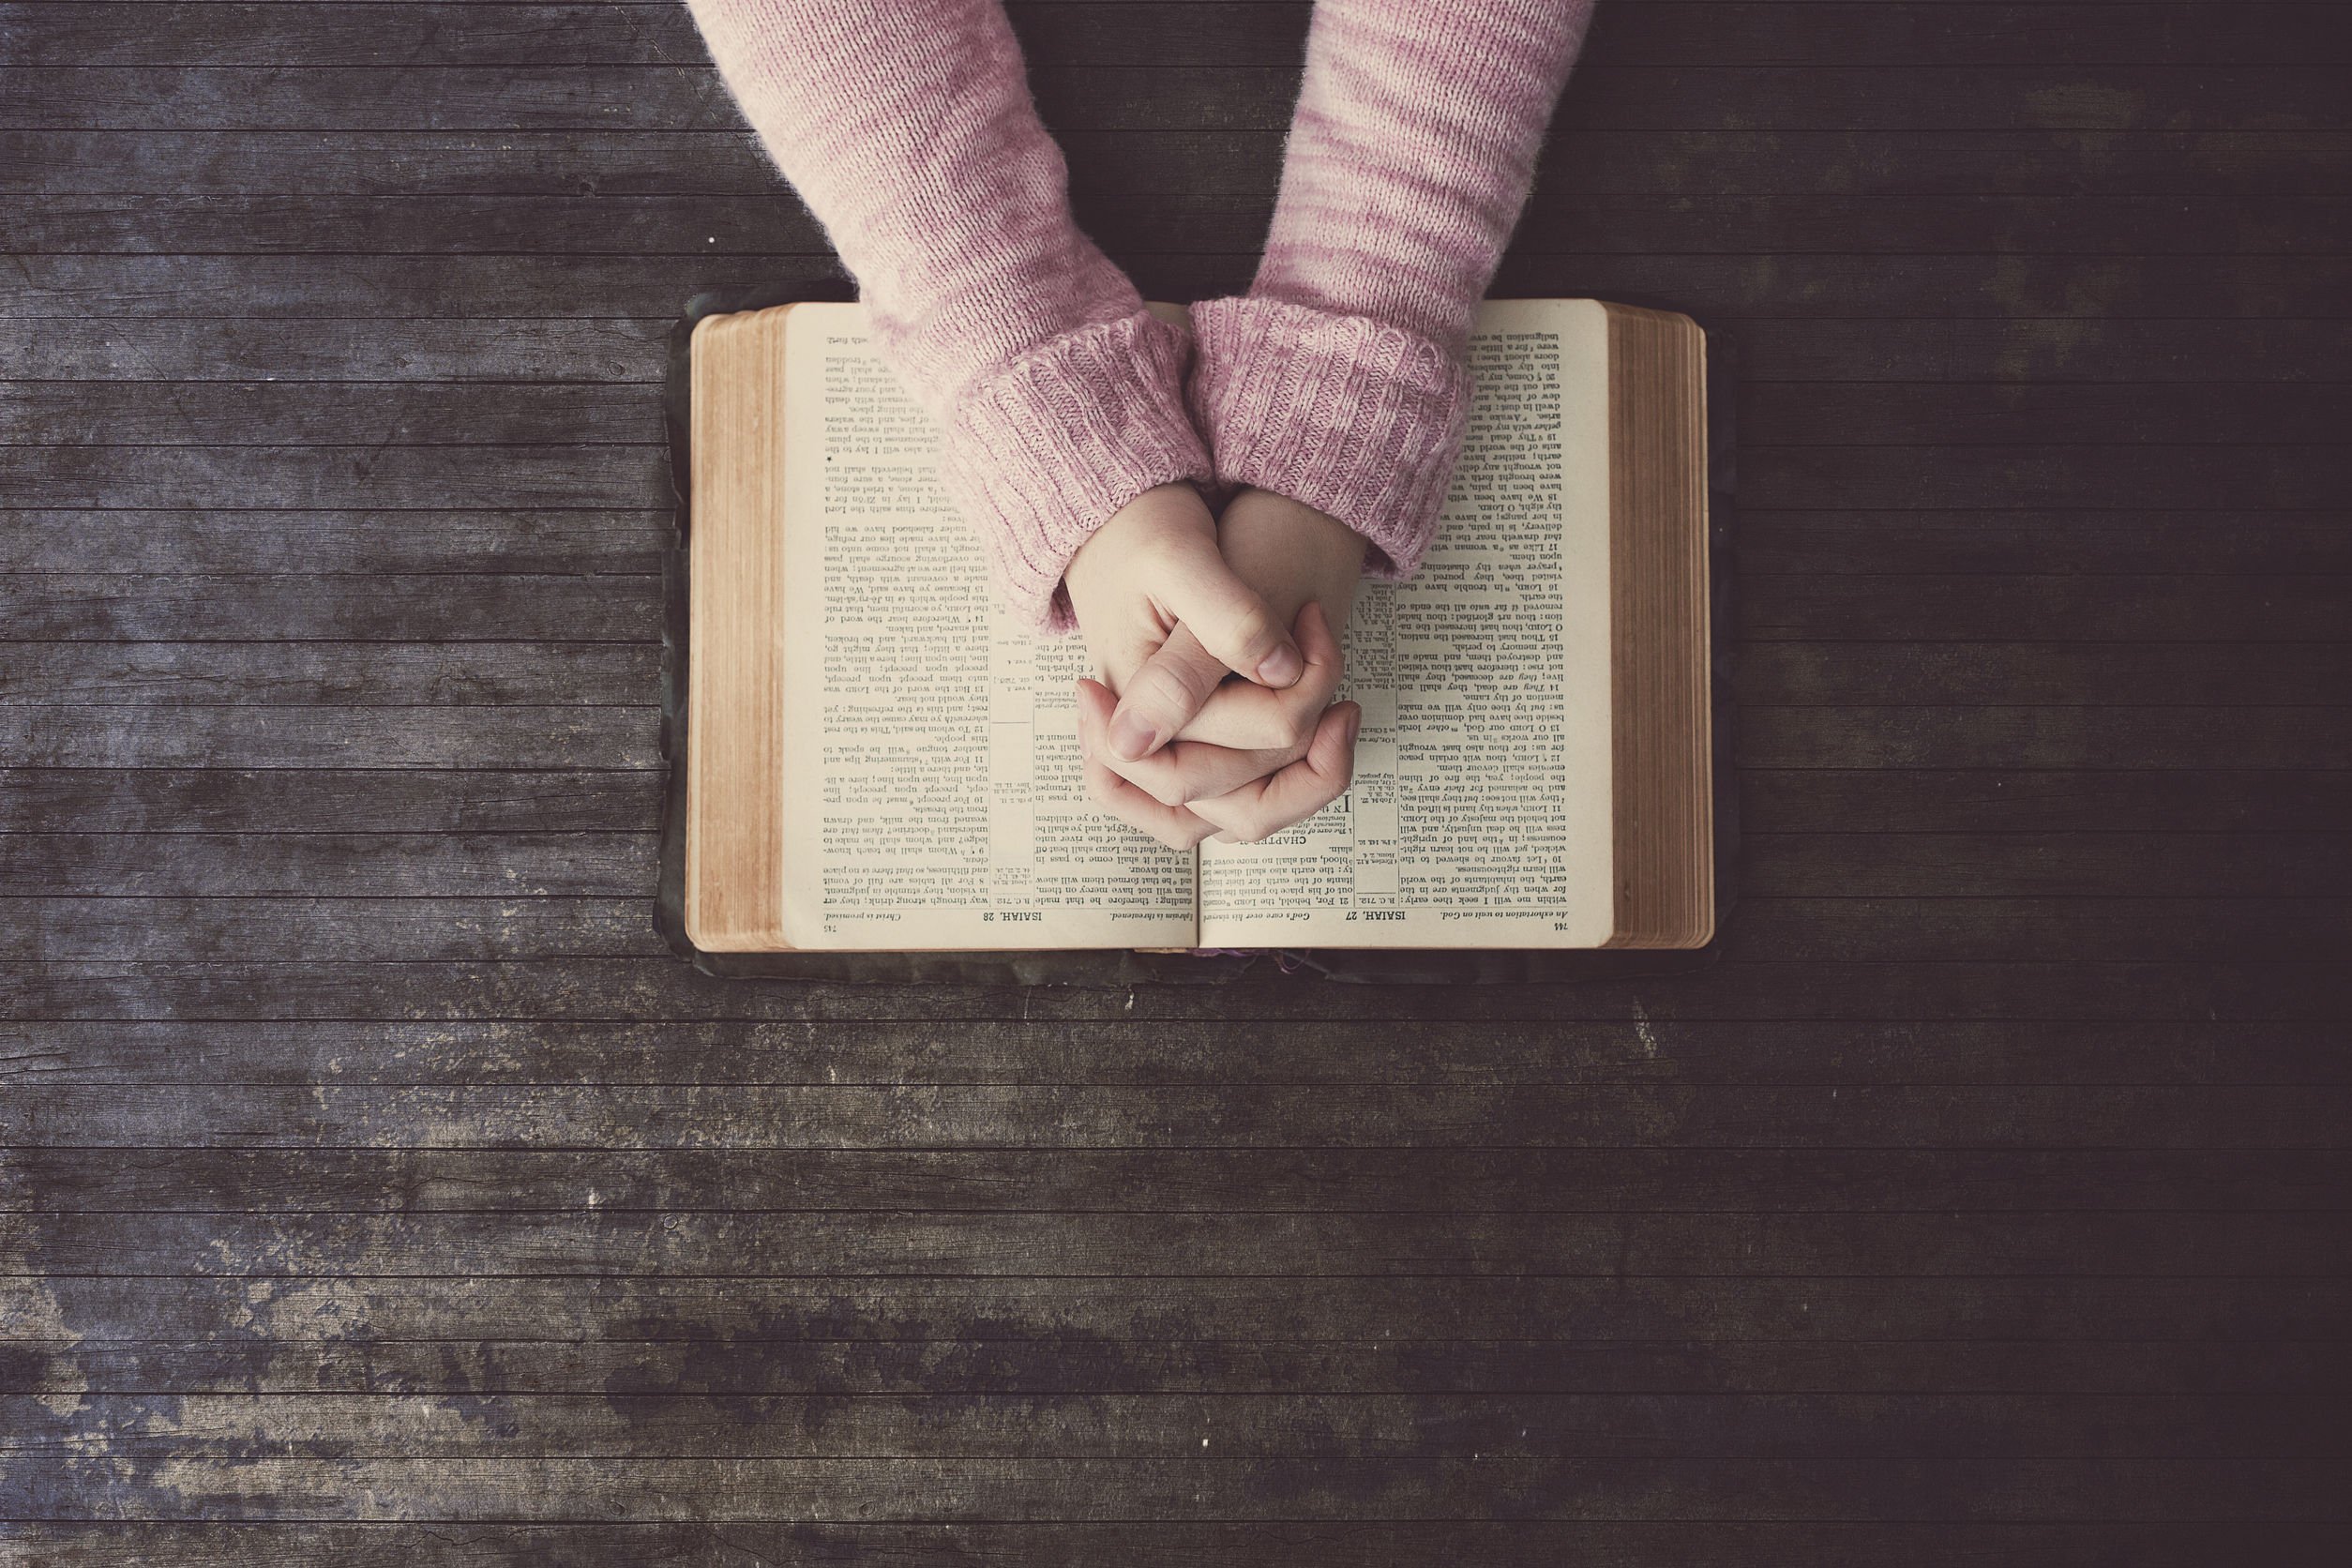 Braços de mulher usando um suéter rosa, com os dedos das duas mãos entrelaçados em cima de uma bíblia aberta.